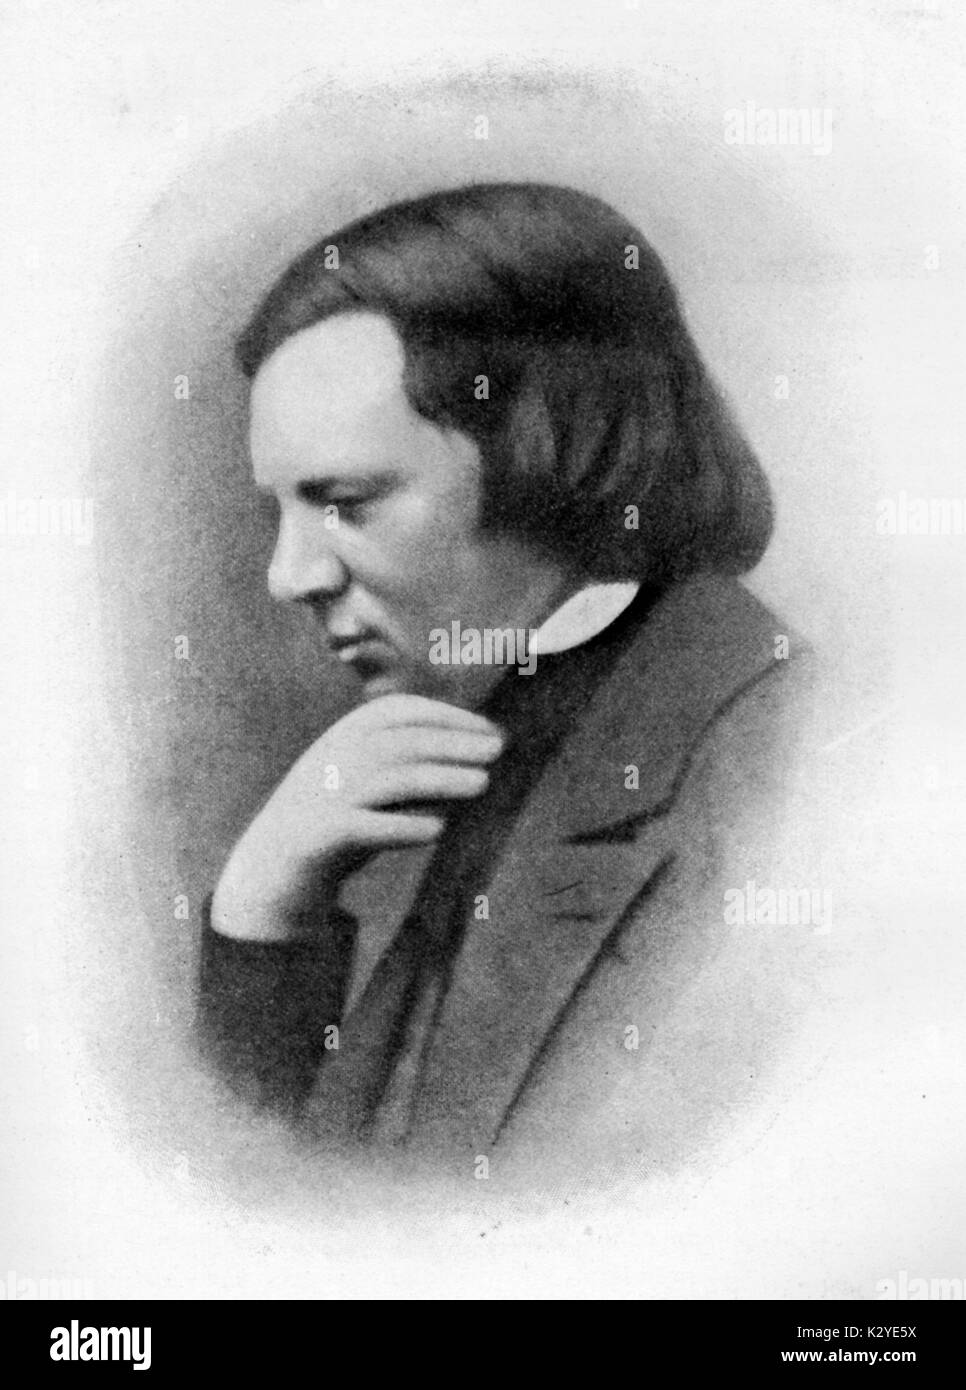 Robert Schumann - portrait of German composer. Early example of daguerreotype, 1850. 1810-1856 Stock Photo